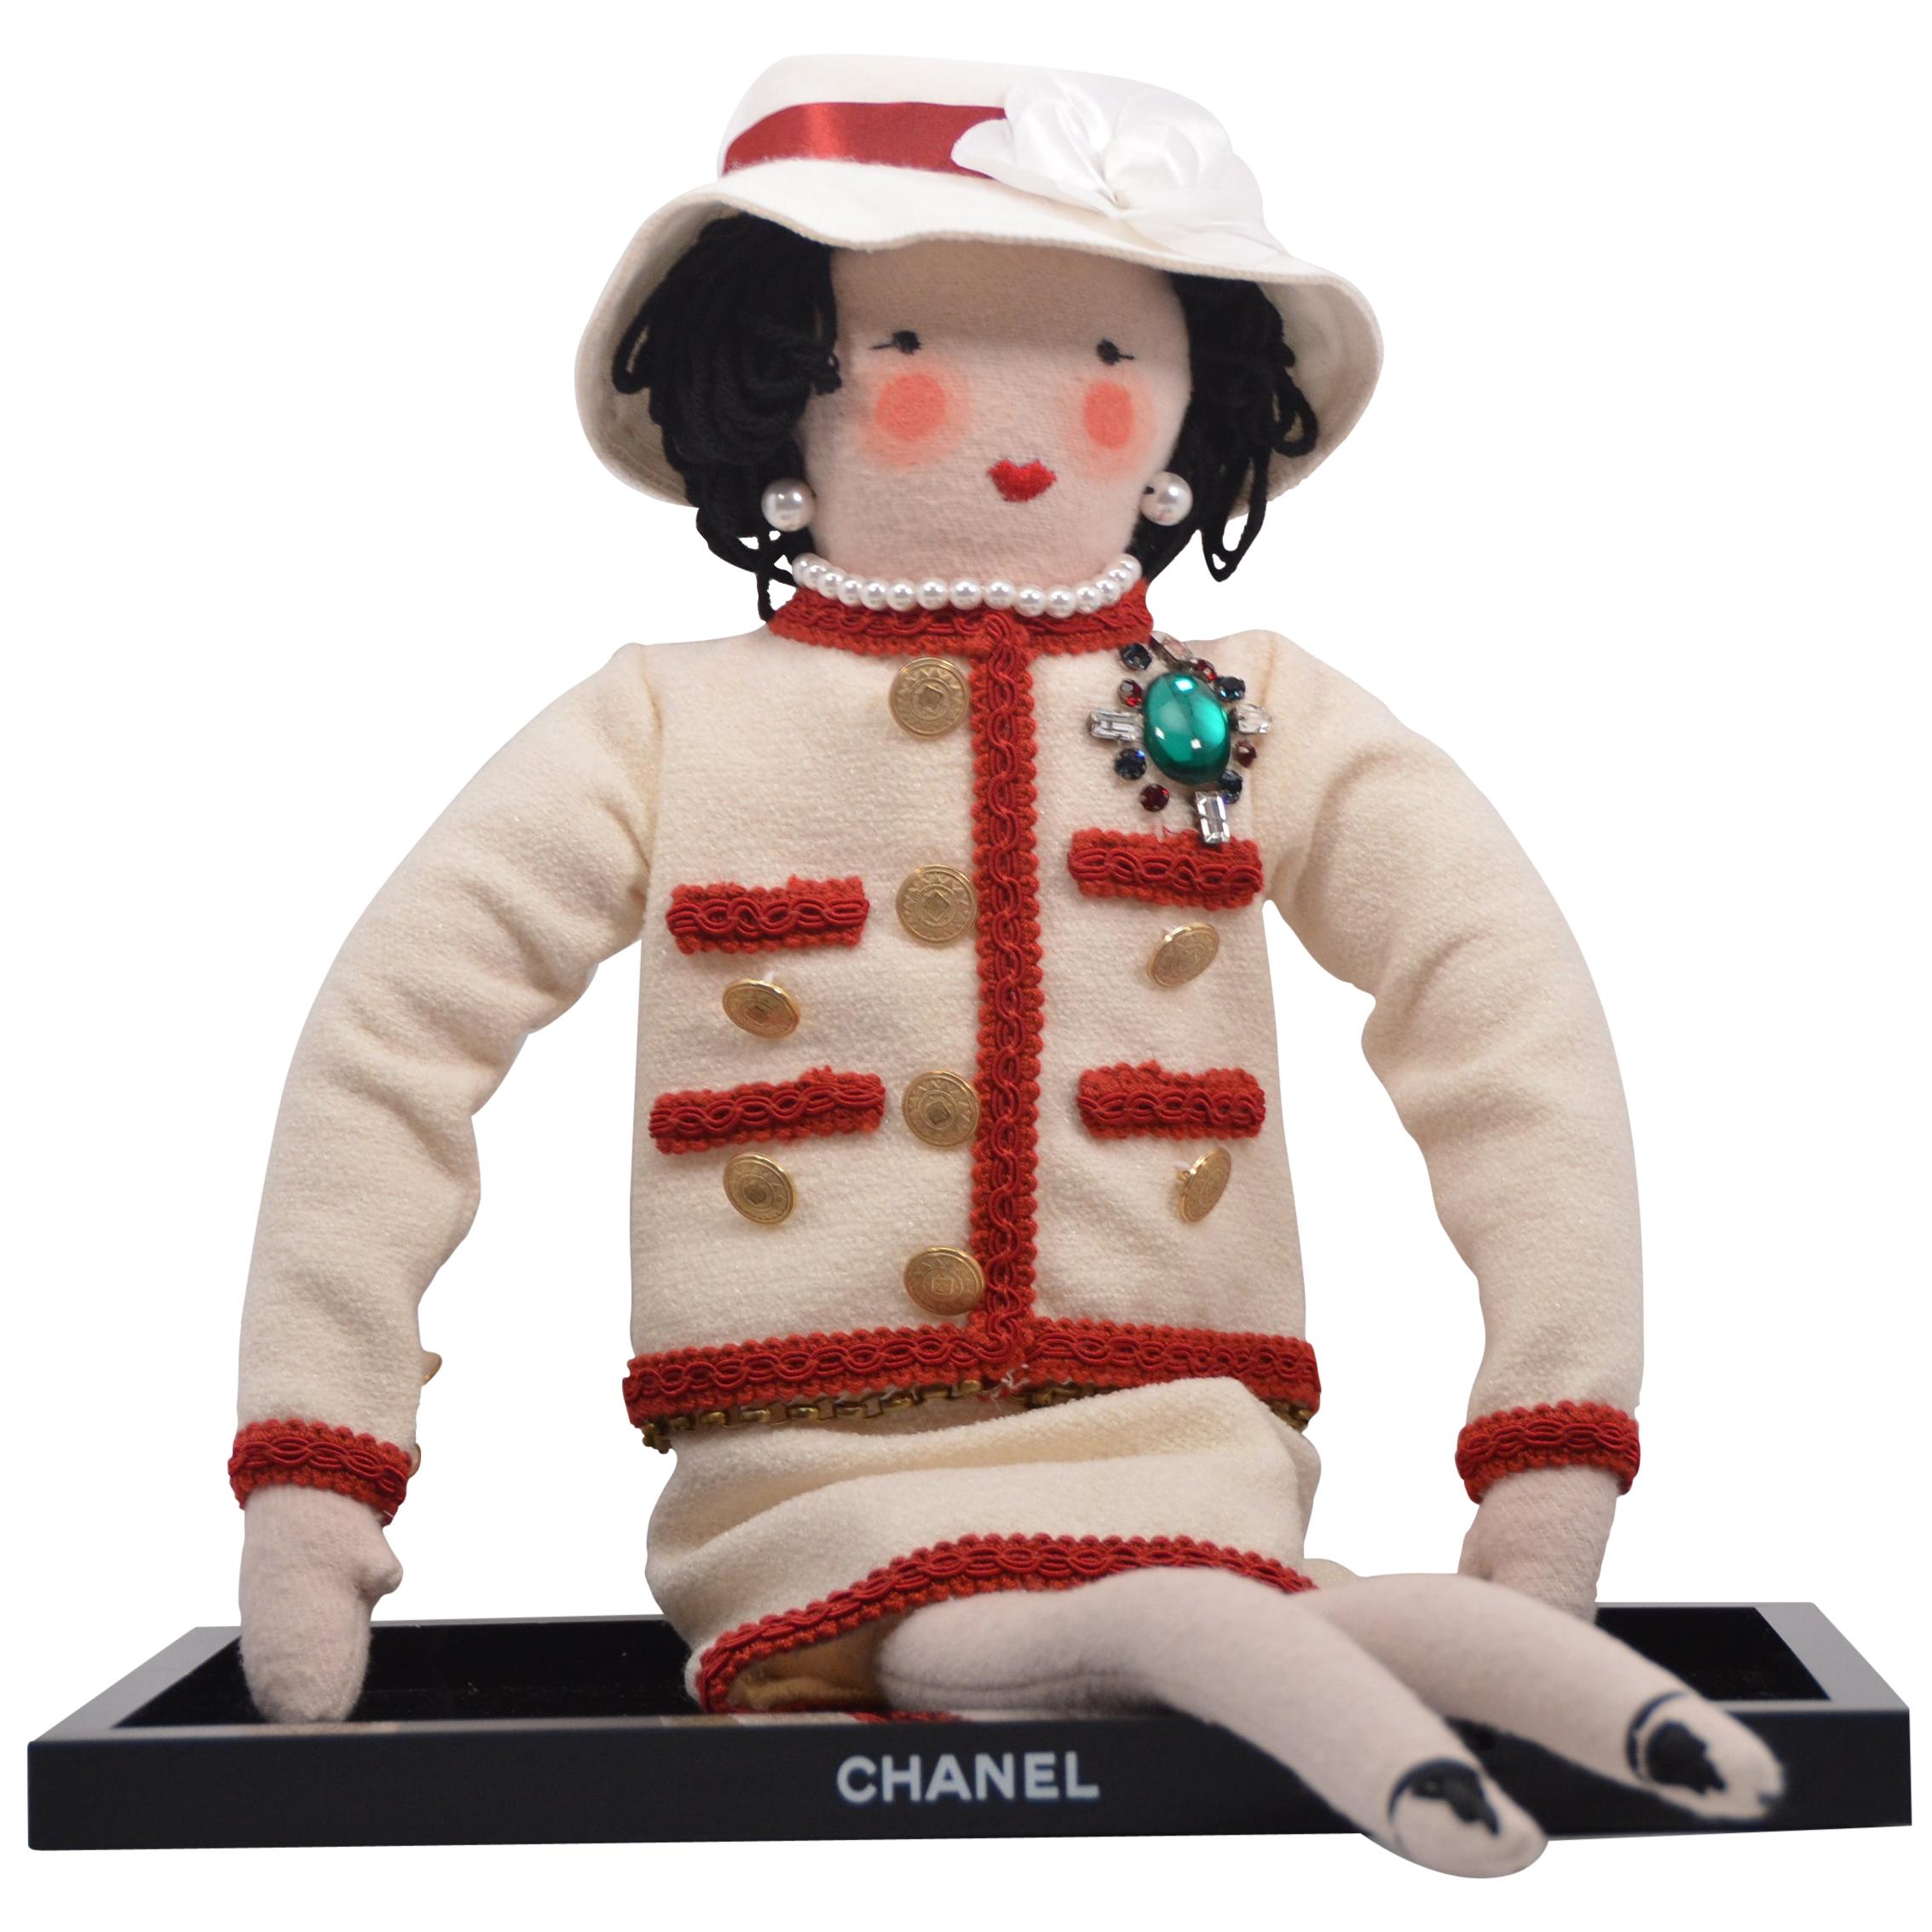 Coco Coco Mademoiselle Chanel Puppe entworfen von Karl Lagerfeld 2010 im Angebot